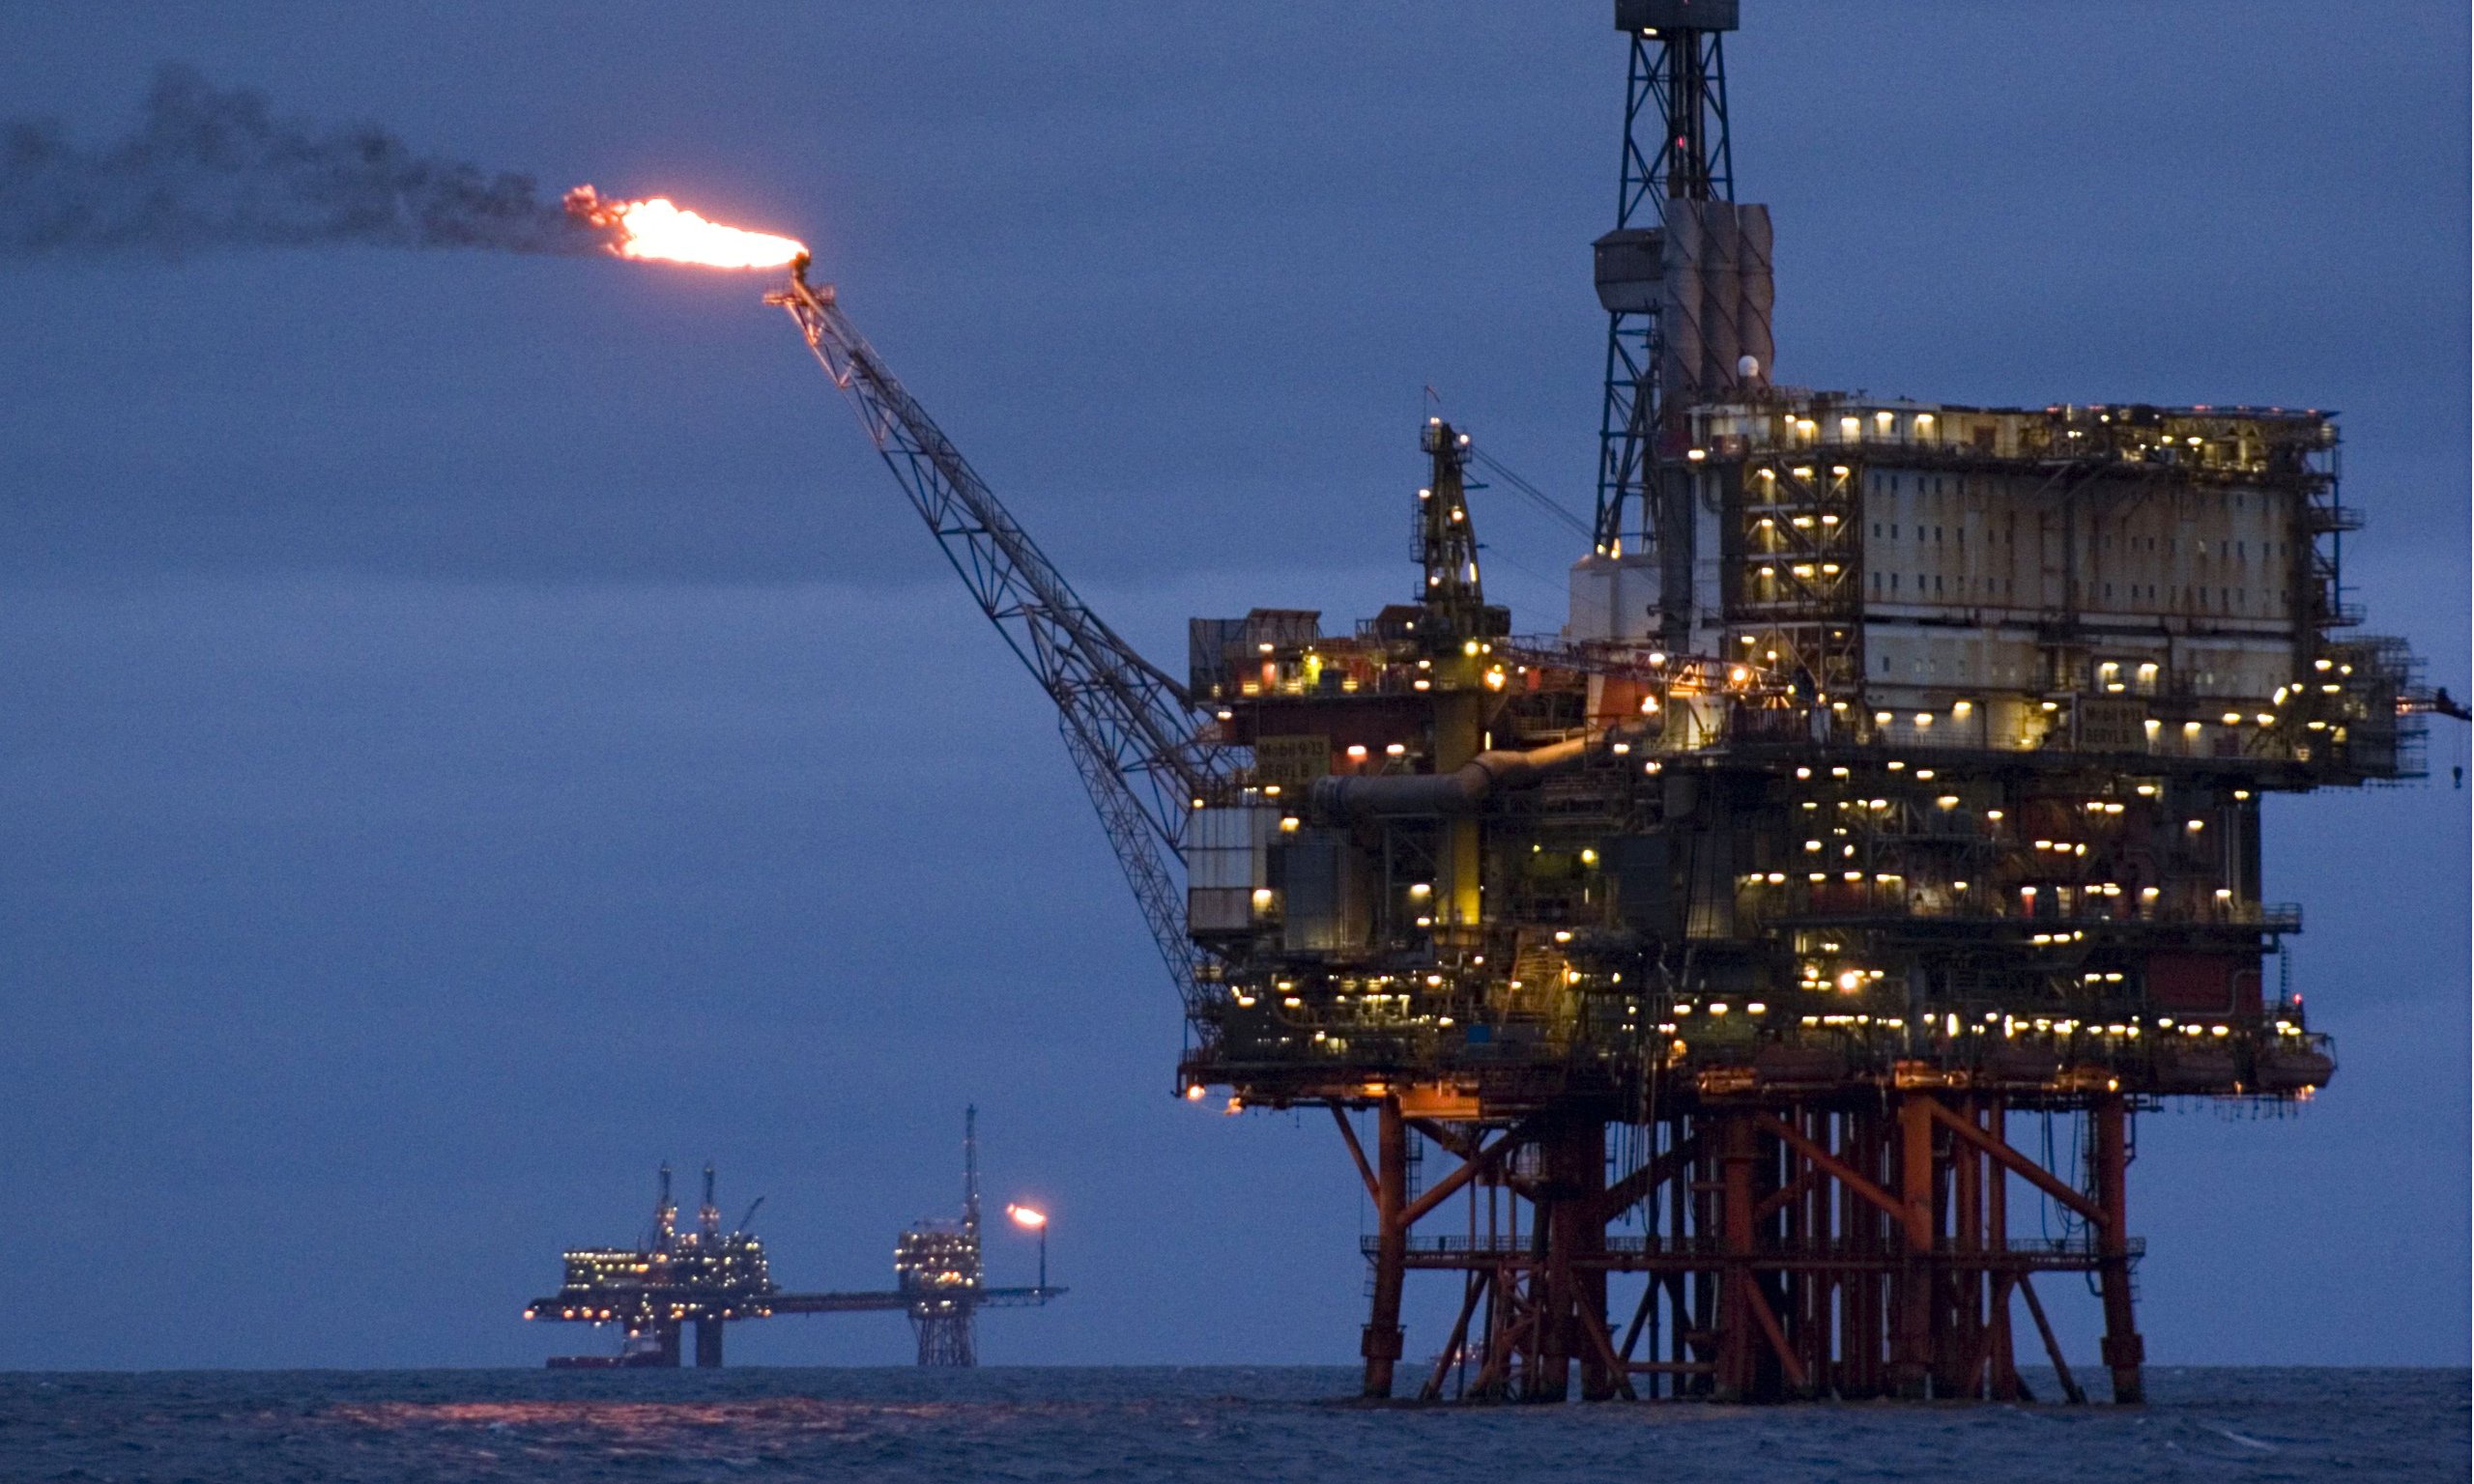 oil, Gas, Rig, Platform, Ocean, Sea, Ship, Boat, 1orig Wallpaper HD / Desktop and Mobile Background